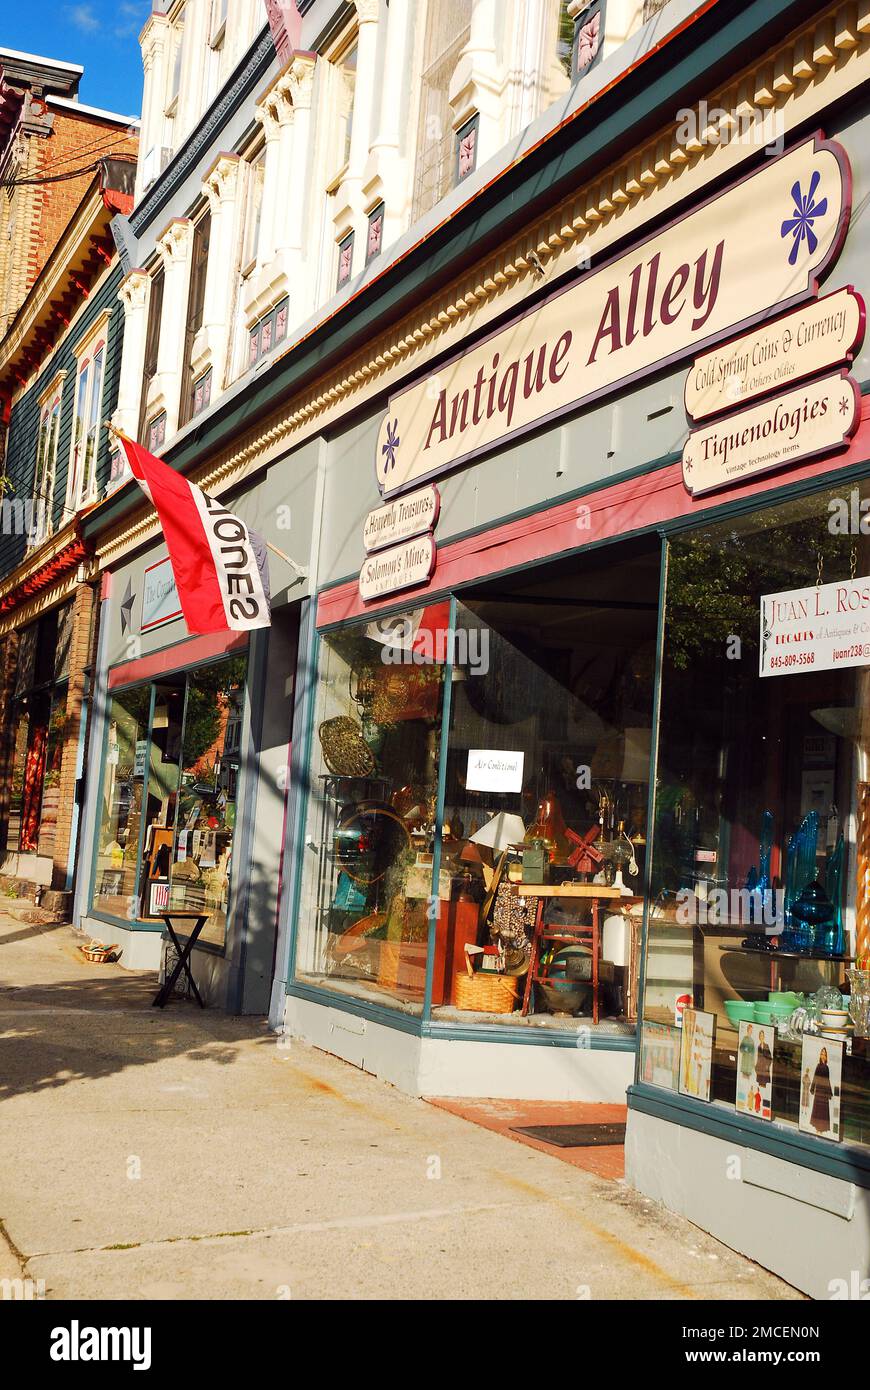 Antique Alley, un charmant magasin qui est l'une des nombreuses entreprises indépendantes dans le centre-ville de Cold Spring, NY Banque D'Images